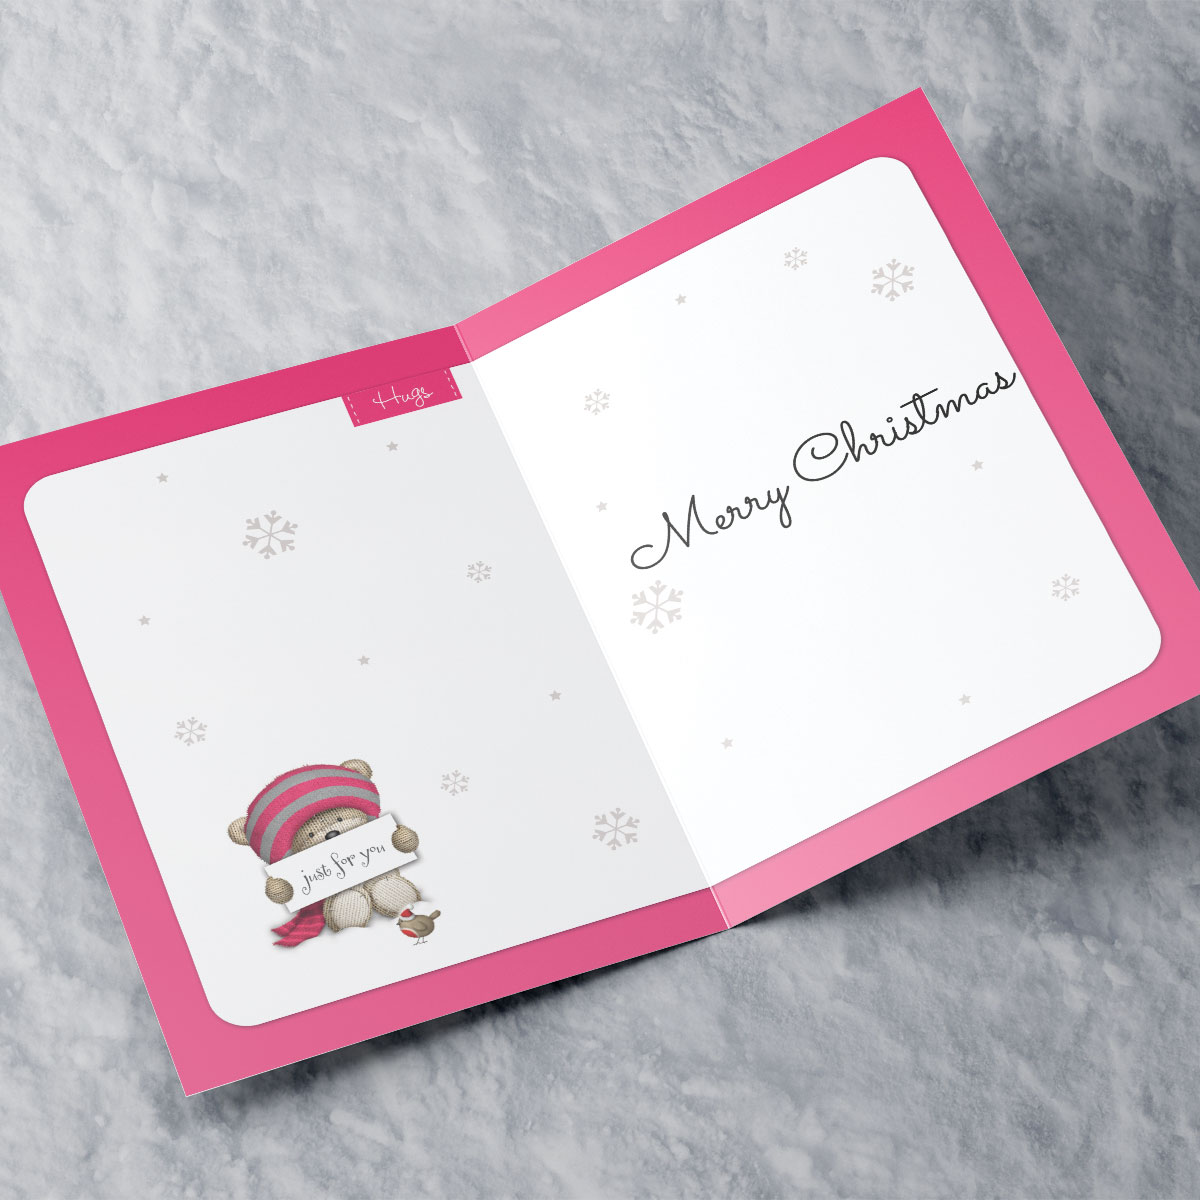 Personalised Hugs Christmas Card - Pink Bear - Niece